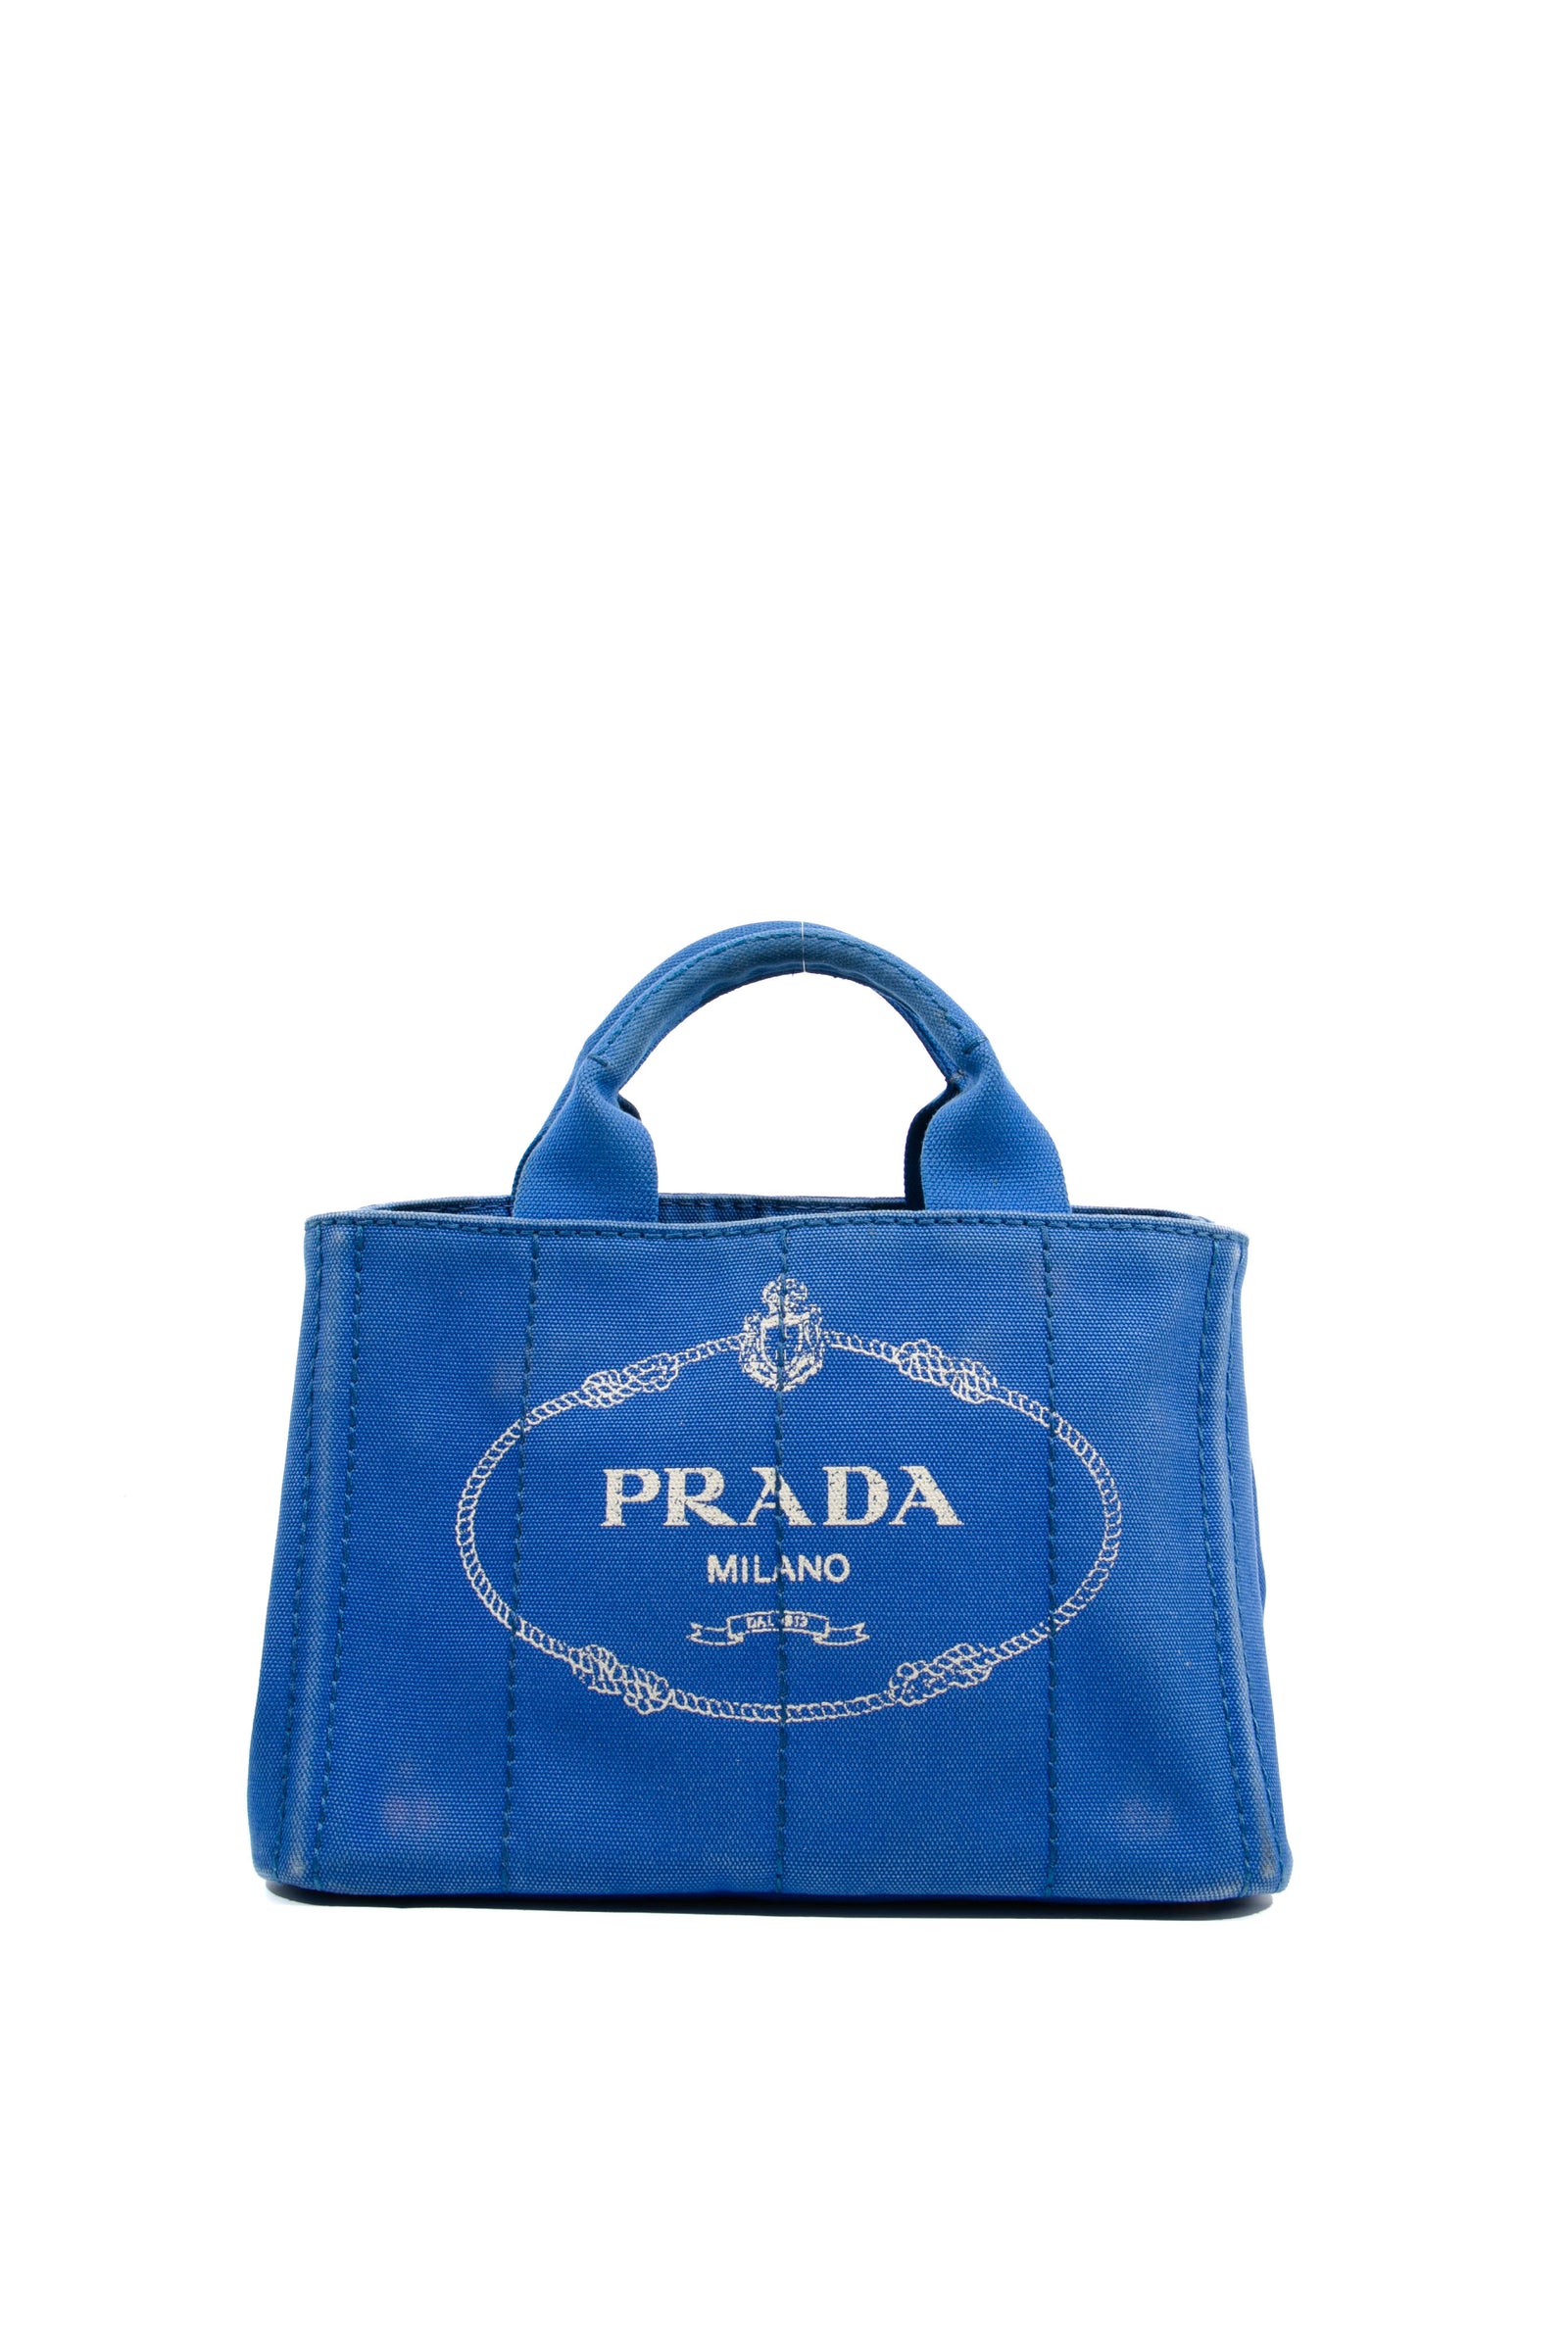 Prada Bags - Explore Prada Bags at Collector's Cage – Page 2– Collectors  cage